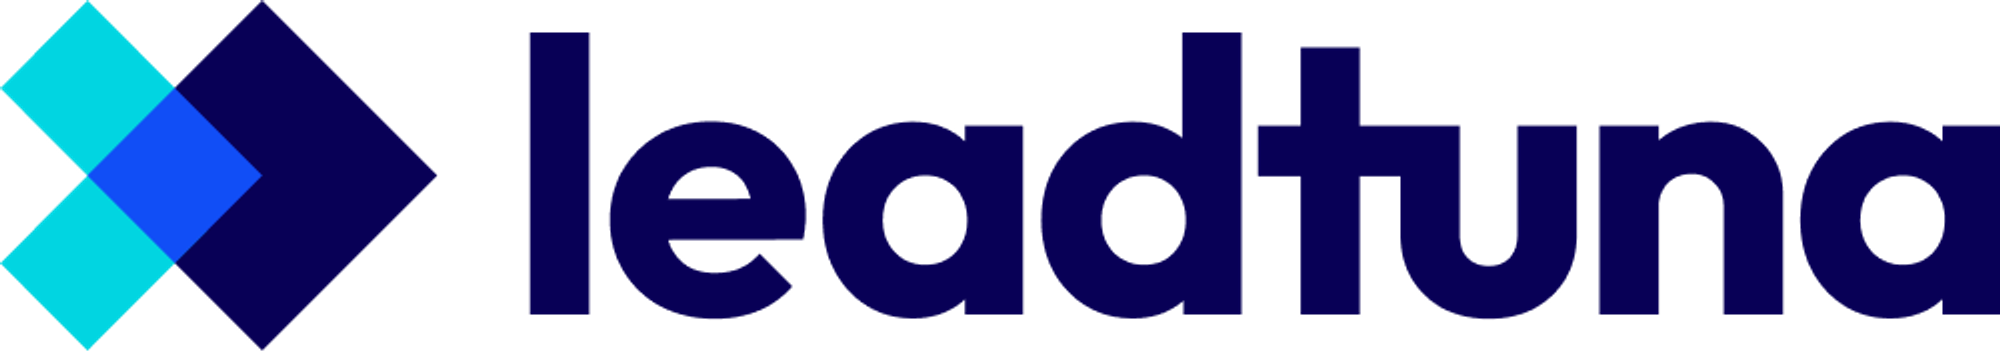 Modern logo design for leadtuna.com